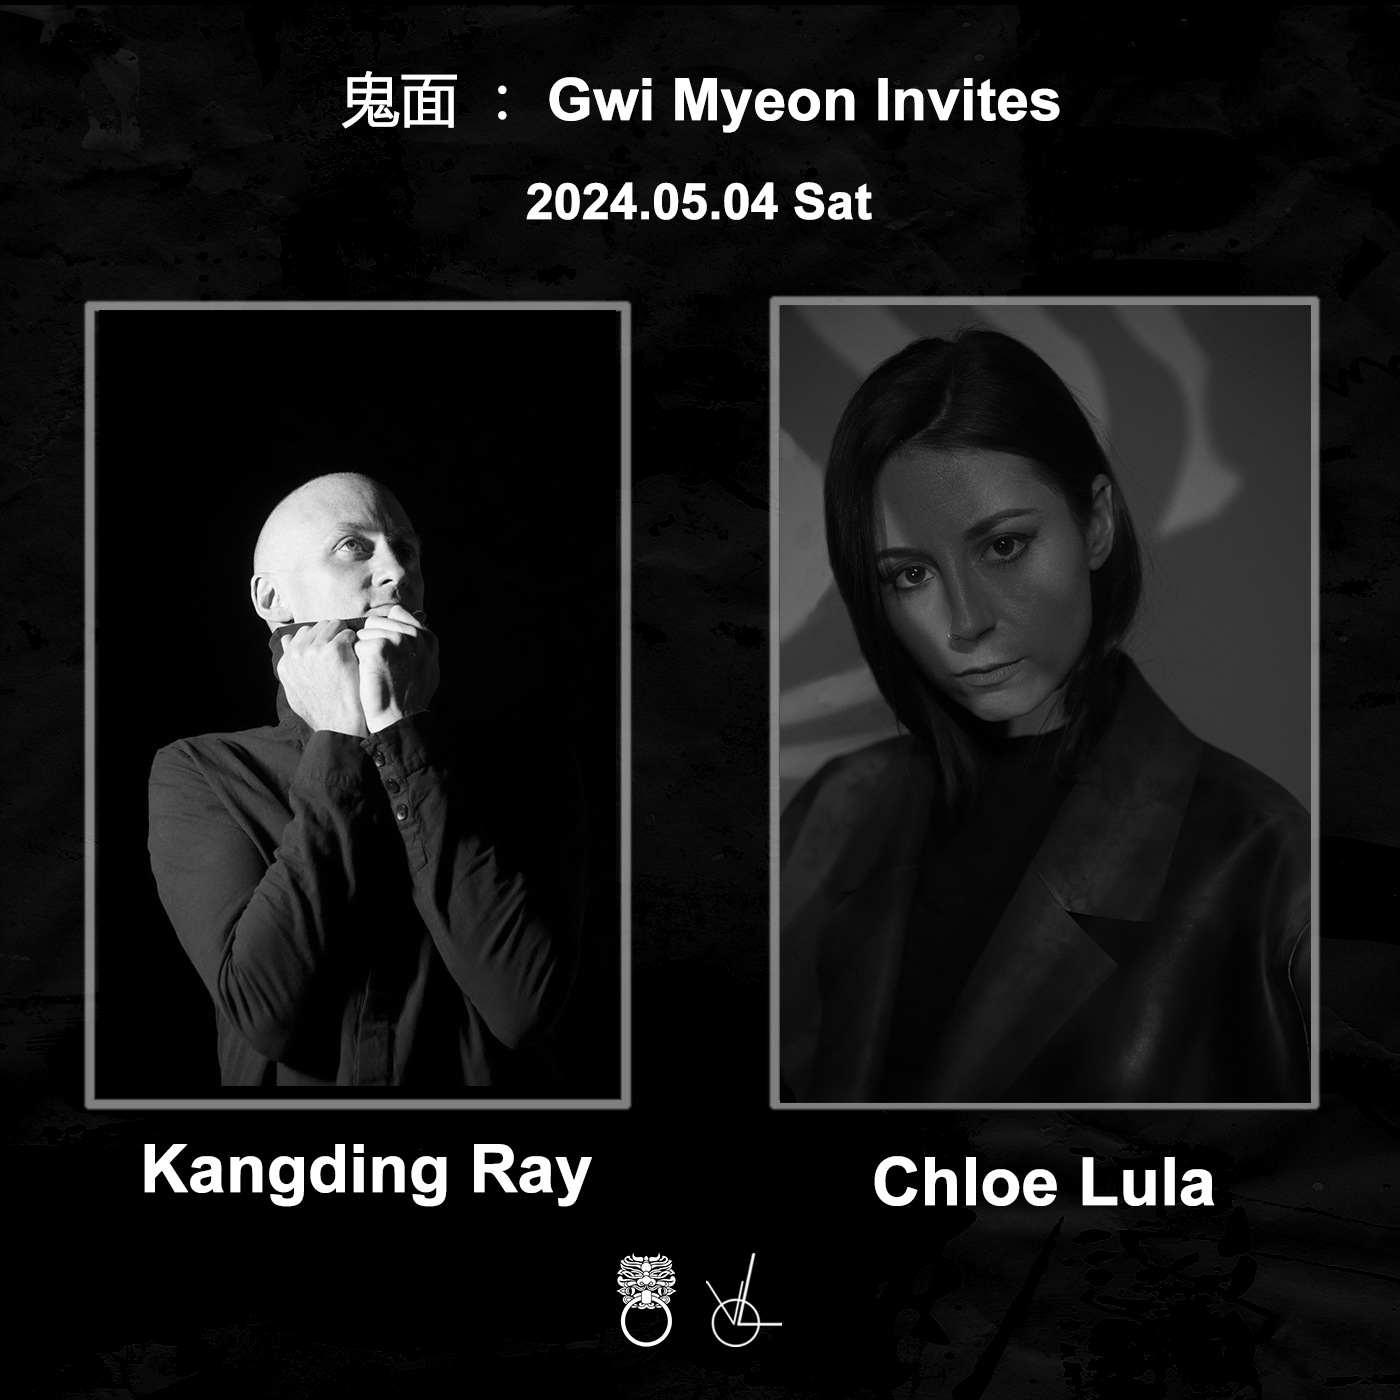 鬼面: GWI MYEON Invites 'Chloe Lula' & 'Kangding Ray' - フライヤー裏